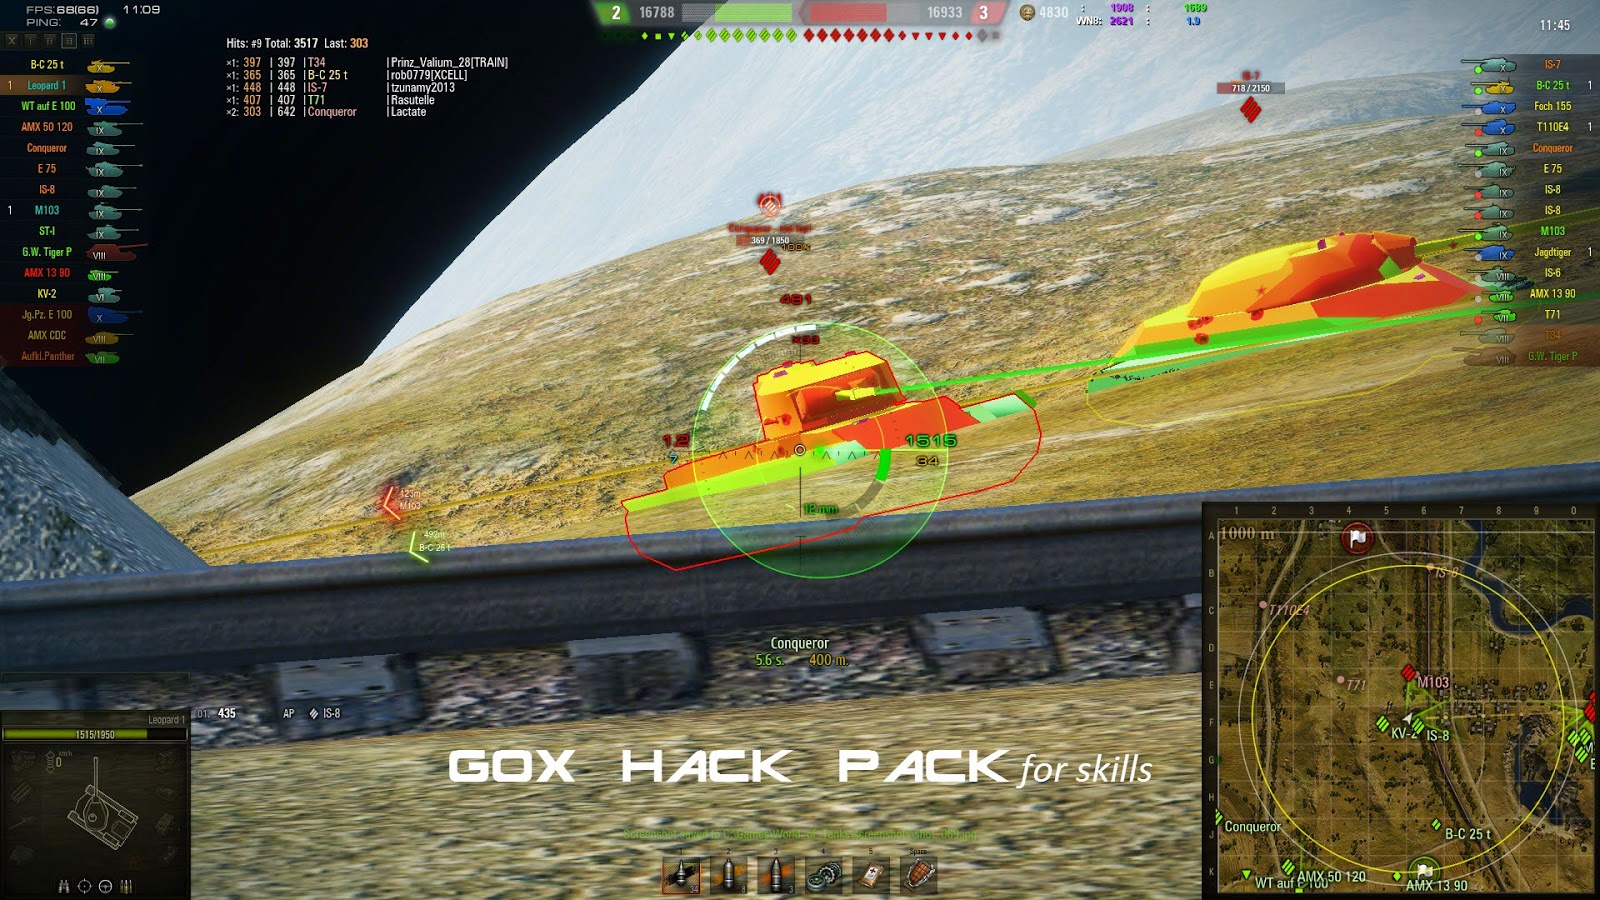 Mods World of Tanks: Hack Pack Gox (v0.13) 9.8 - 1600 x 900 jpeg 424kB